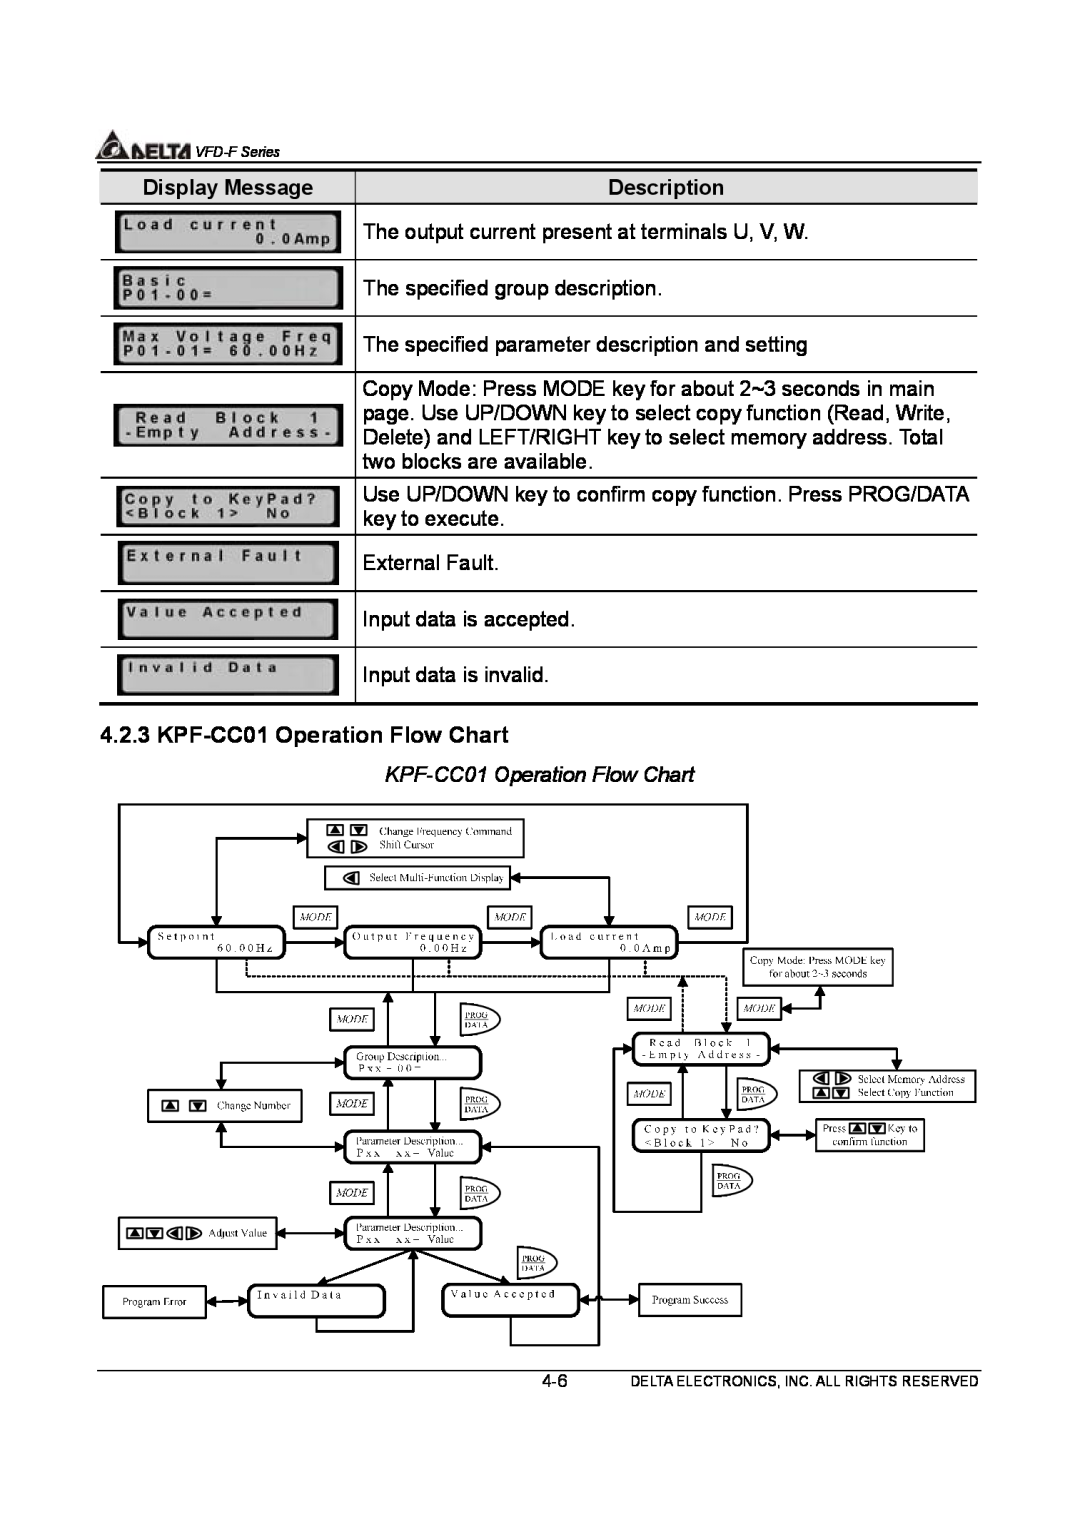 Delta Electronics VFD-F Series manual KPF-CC01 Operation Flow Chart, Display Message, Description 